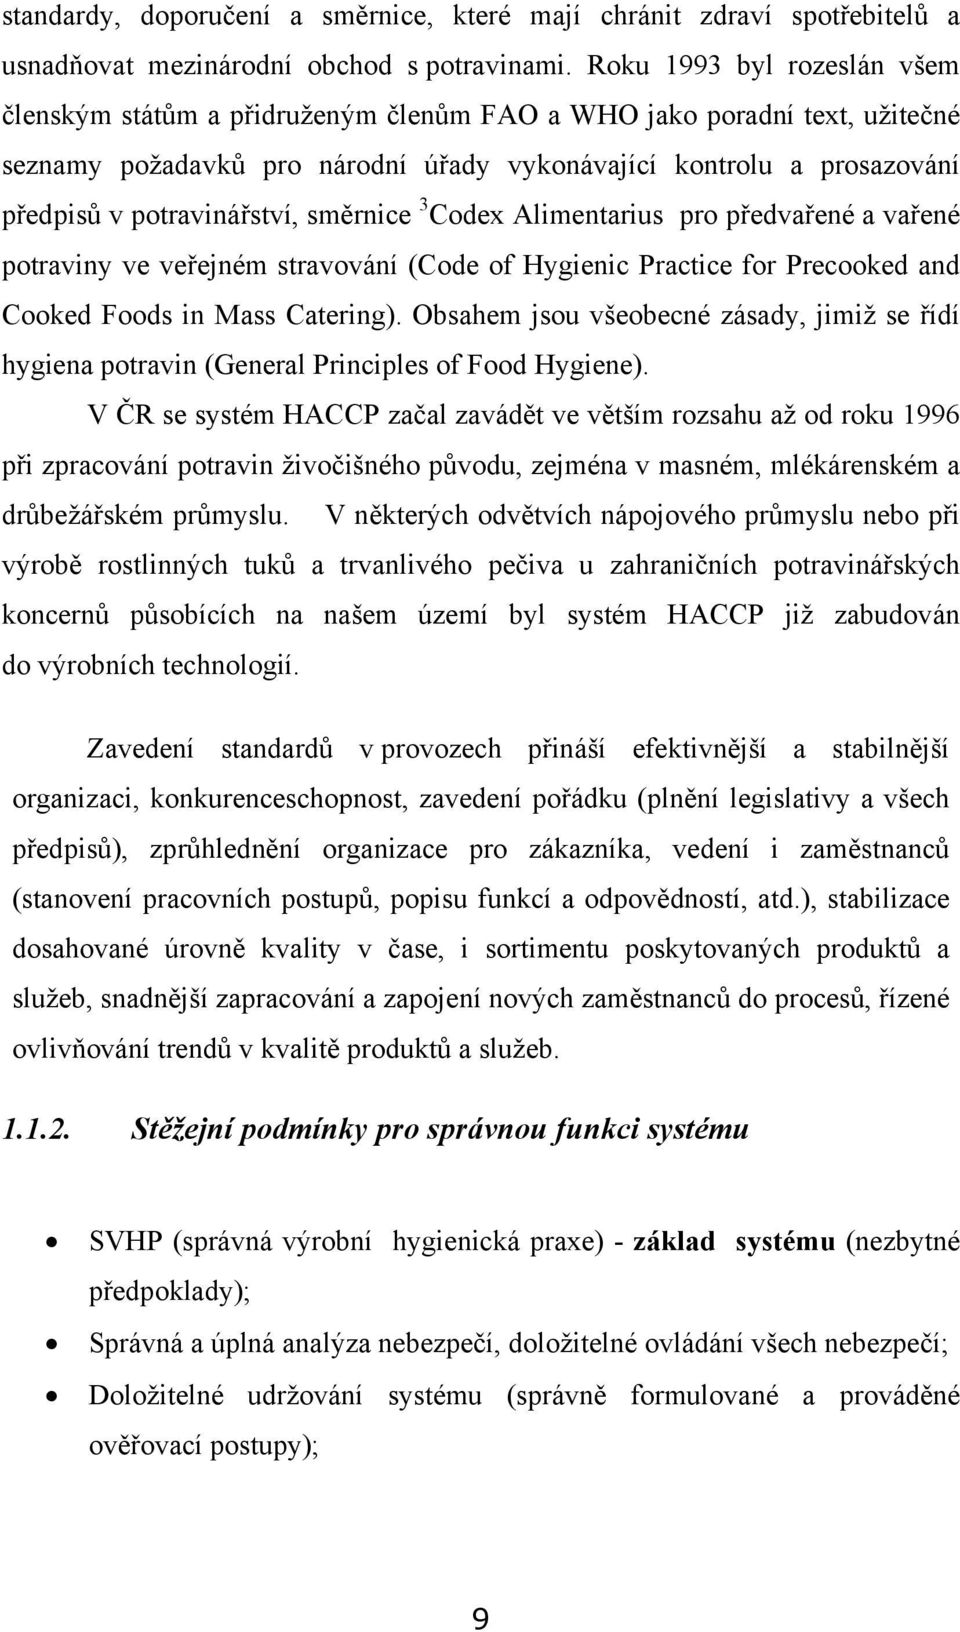 potravinářství, směrnice 3 Codex Alimentarius pro předvařené a vařené potraviny ve veřejném stravování (Code of Hygienic Practice for Precooked and Cooked Foods in Mass Catering).